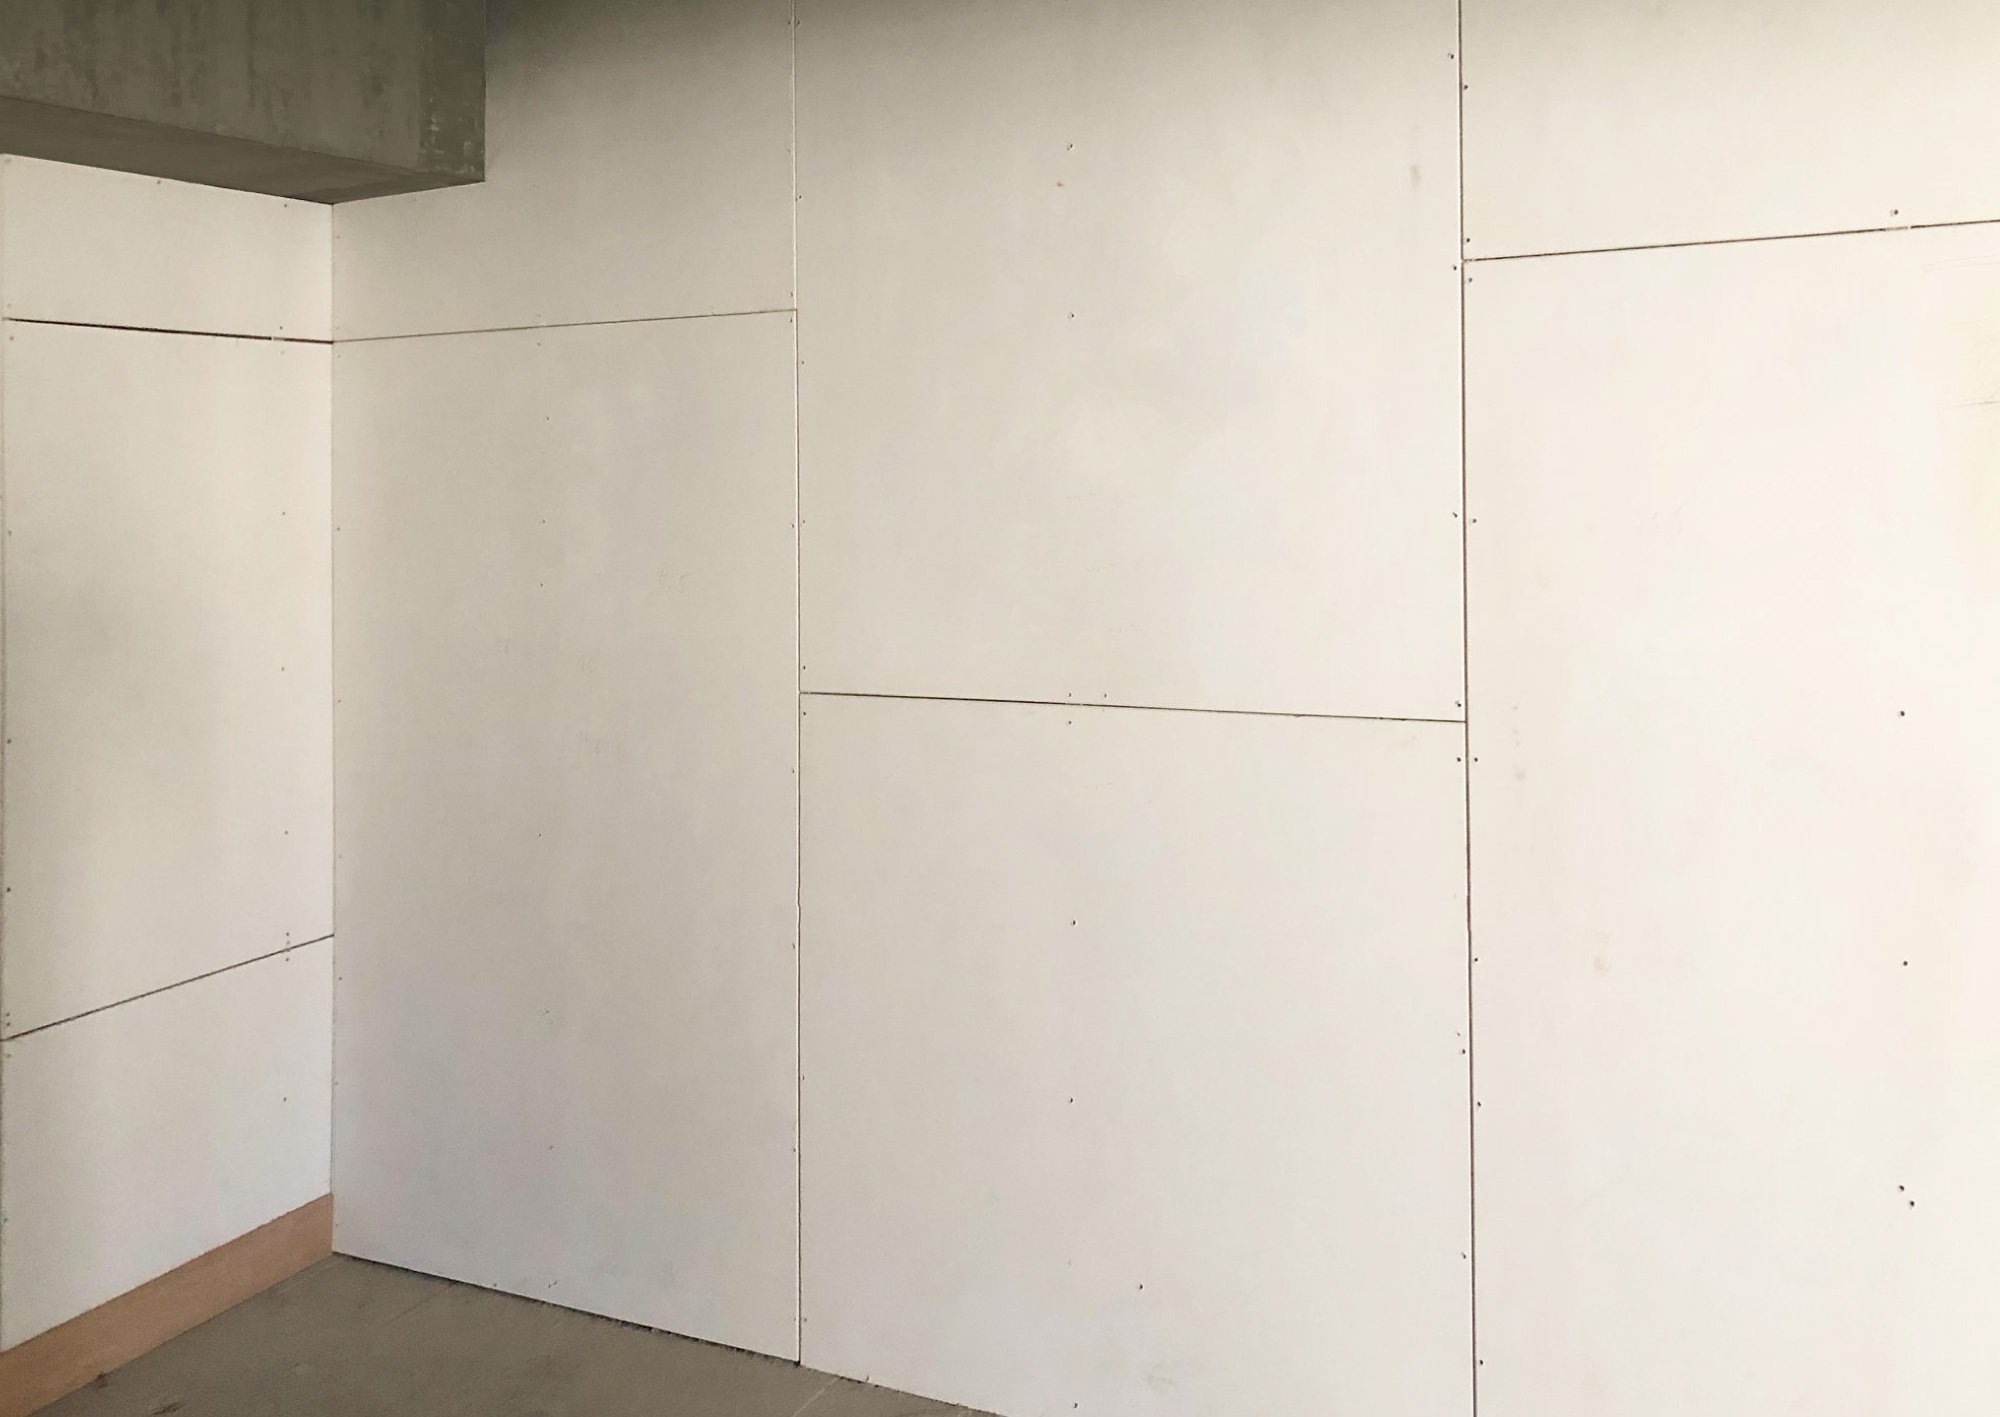 永逢-防火綠建材(矽酸鈣板)-佳展矽酸鈣板-住家隔間牆-耐火隔間牆